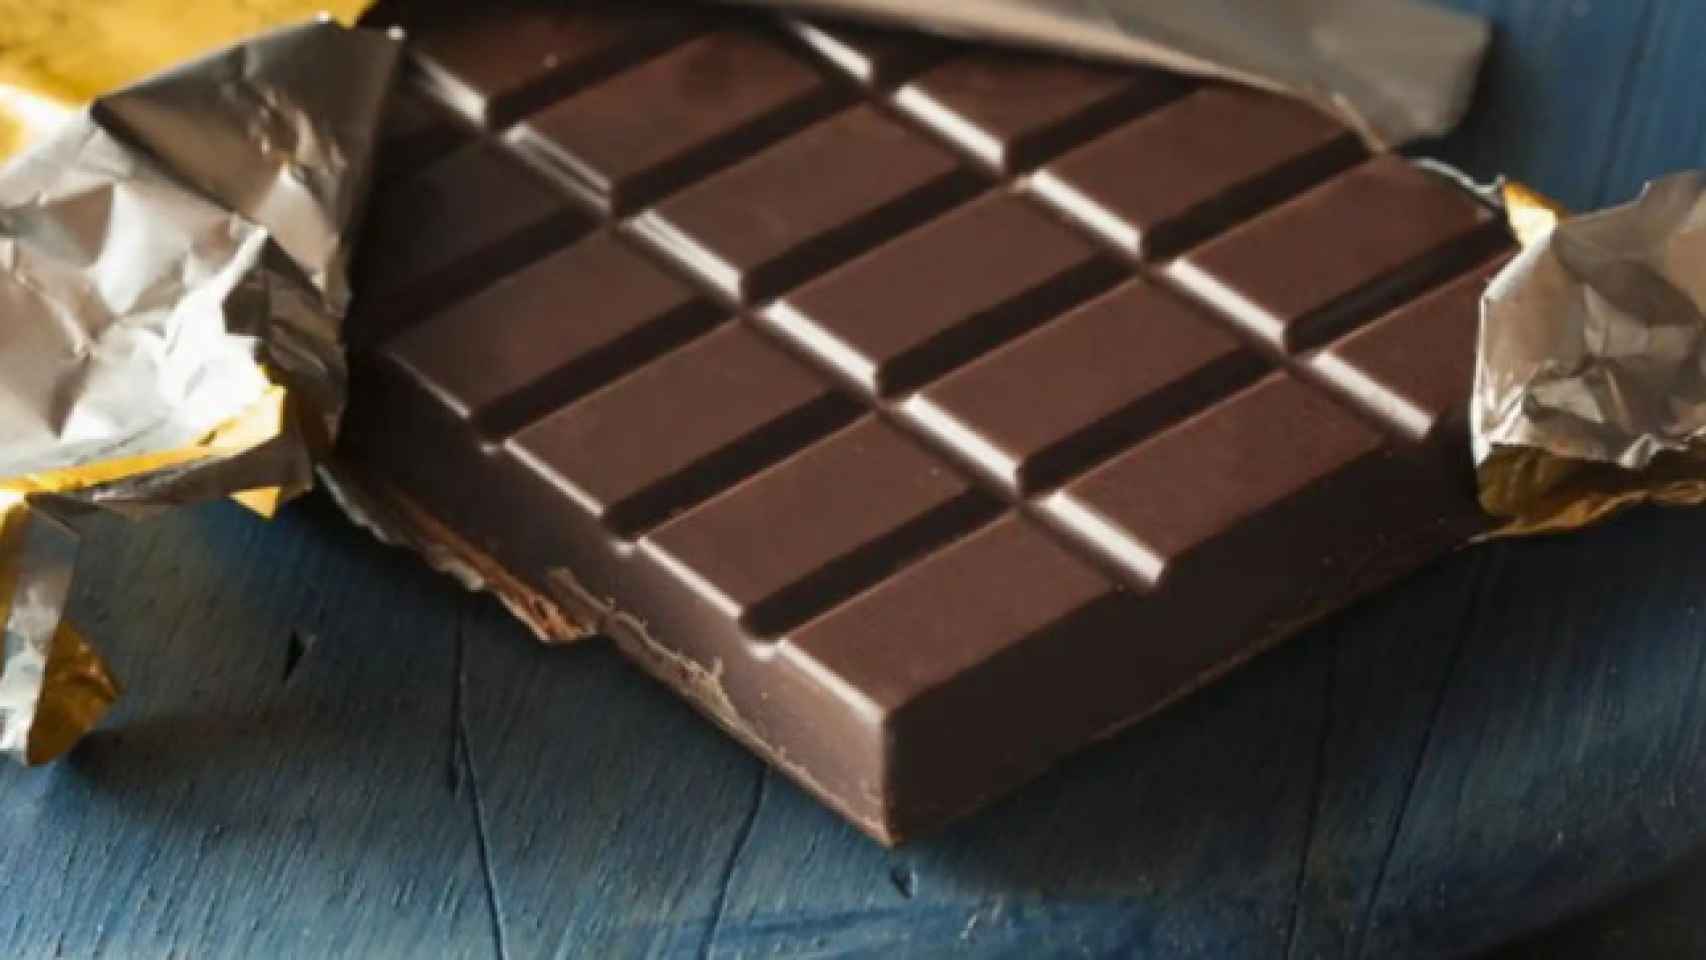 Una tableta de chocolate.